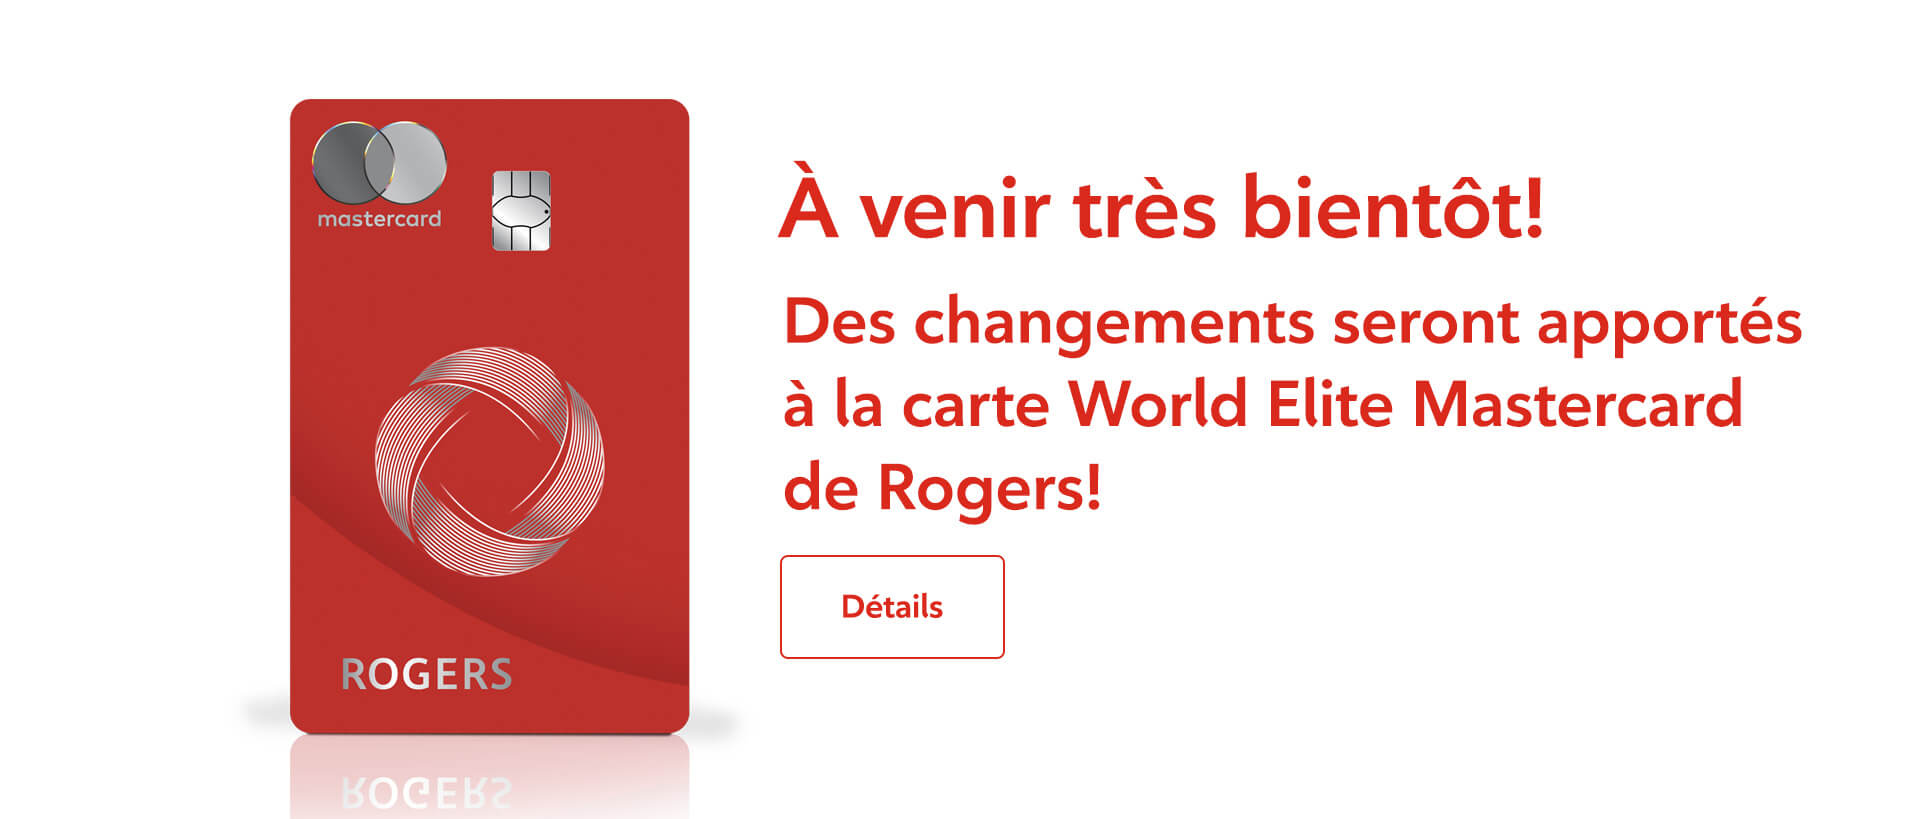 Découvrez les nouveaux changements qui seront apportés à la carte World Elite Mastercard de Rogers.